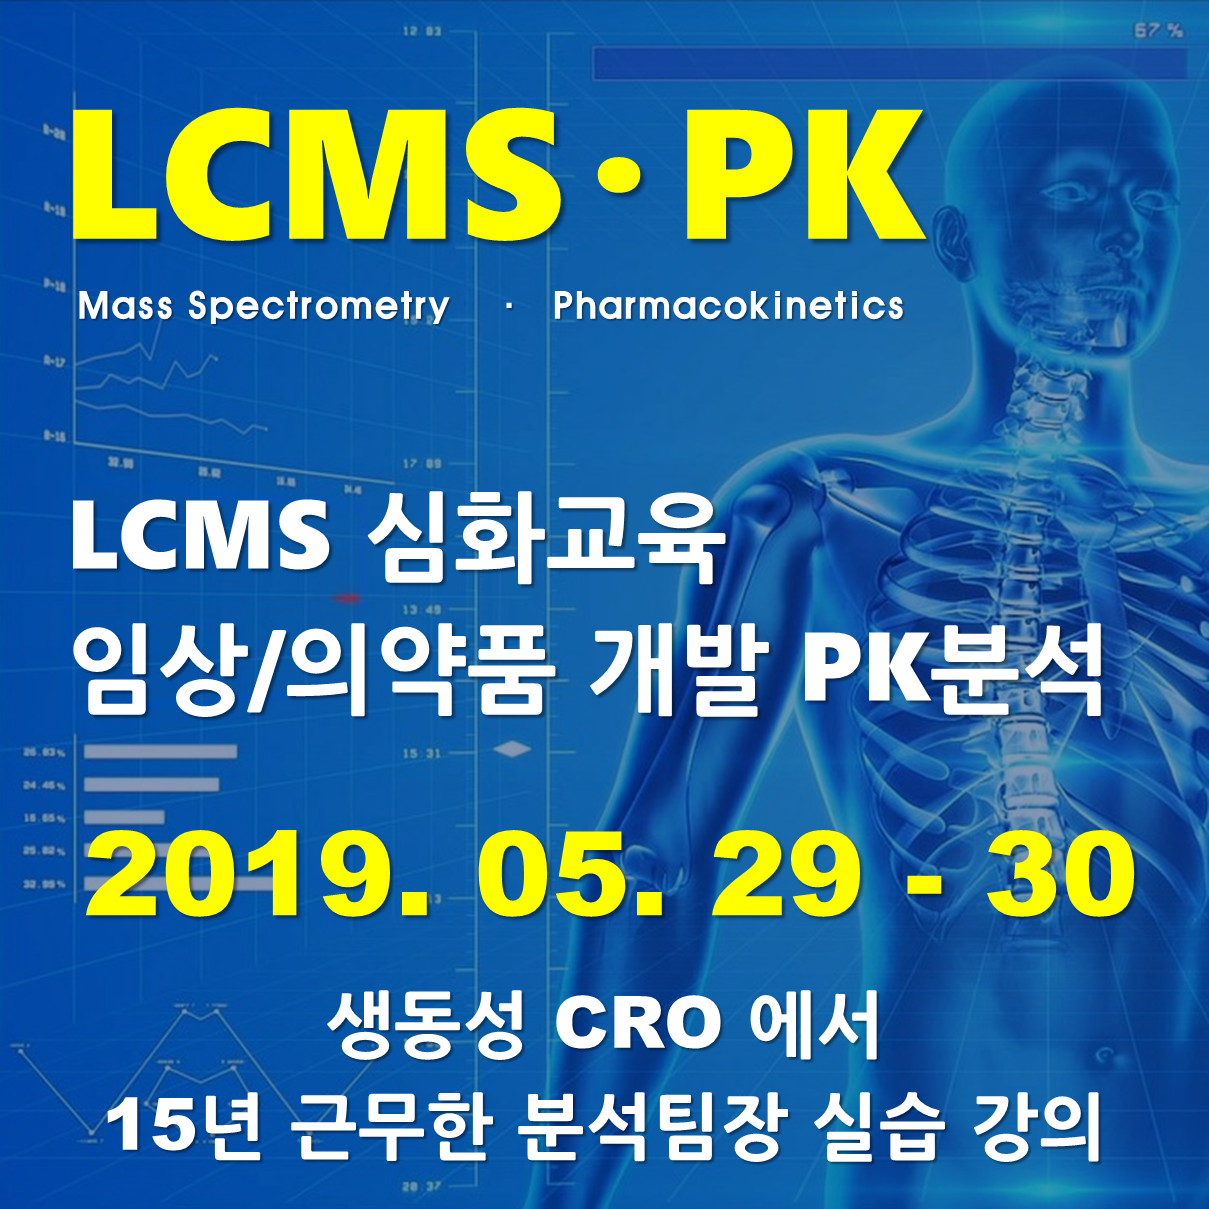 LCMS 심화교육 – 임상/의약품 개발 PK 분석 교육 - 실습과정